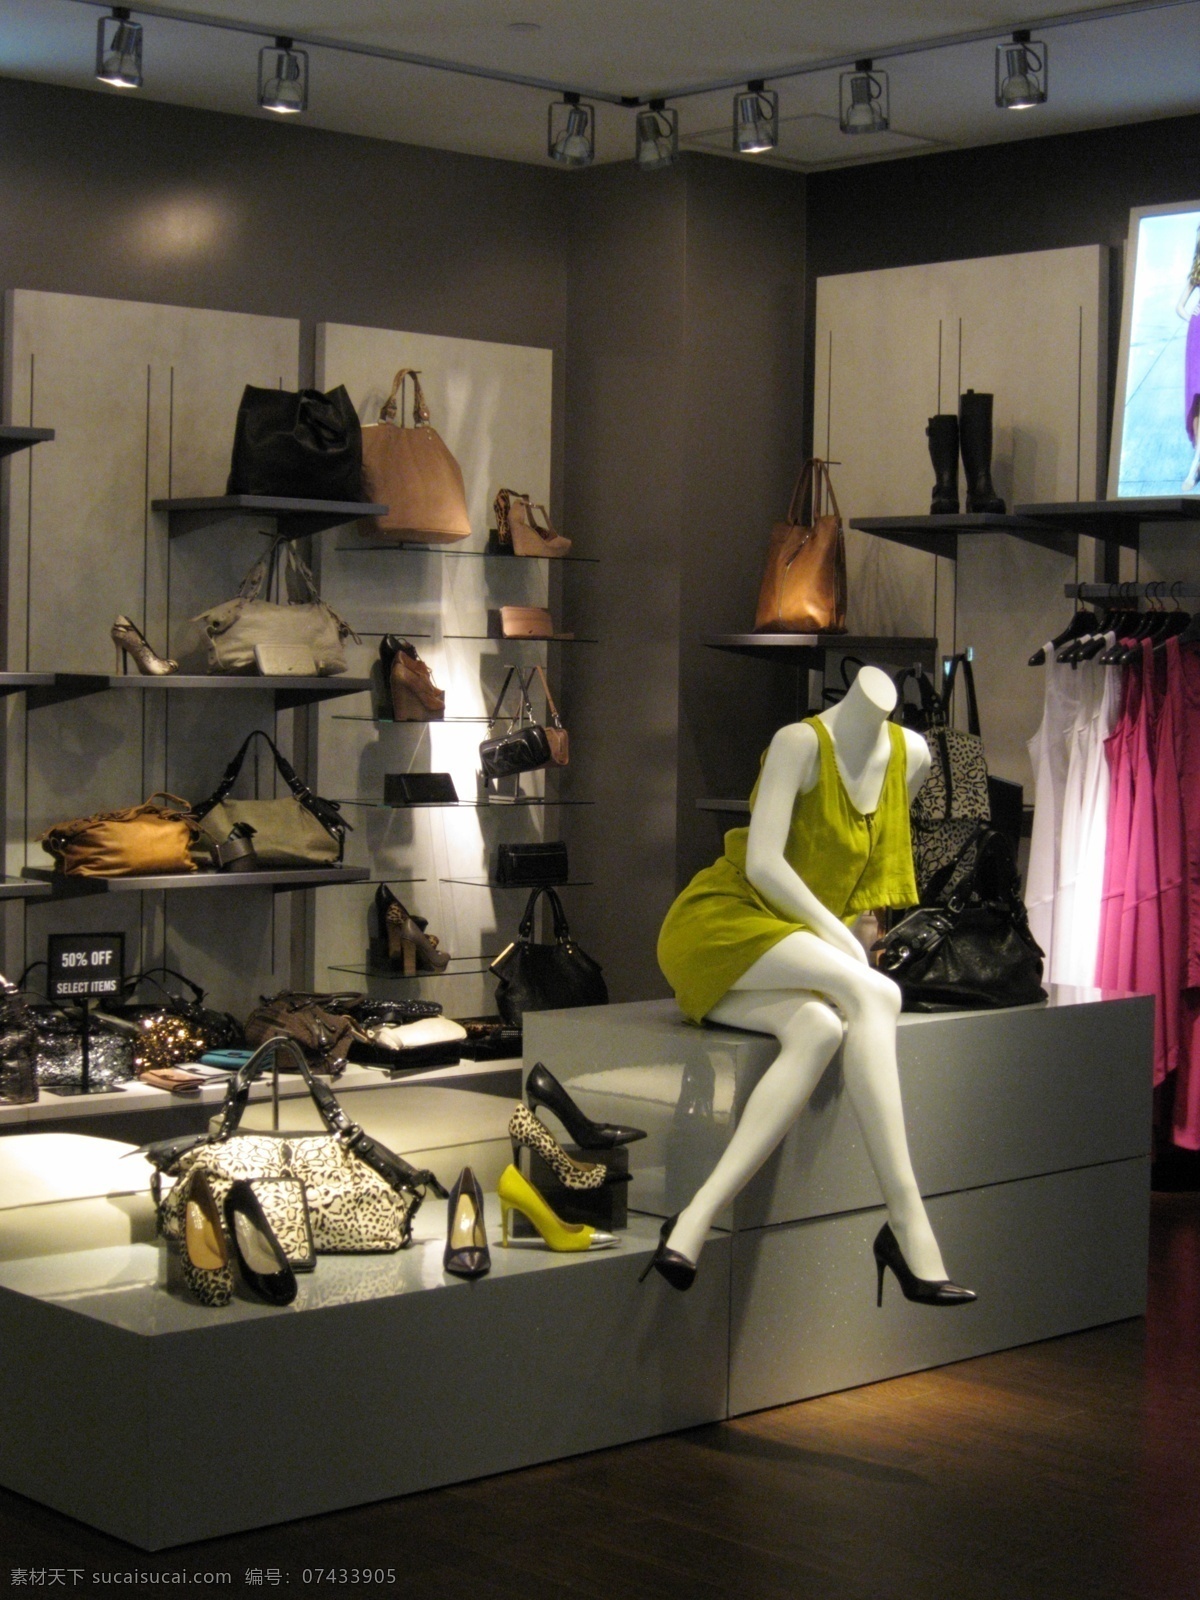 女性用品 专卖店 购物 专卖店设计 包 高跟鞋 裙子 货架 塑料模特 室内设计 环境家居